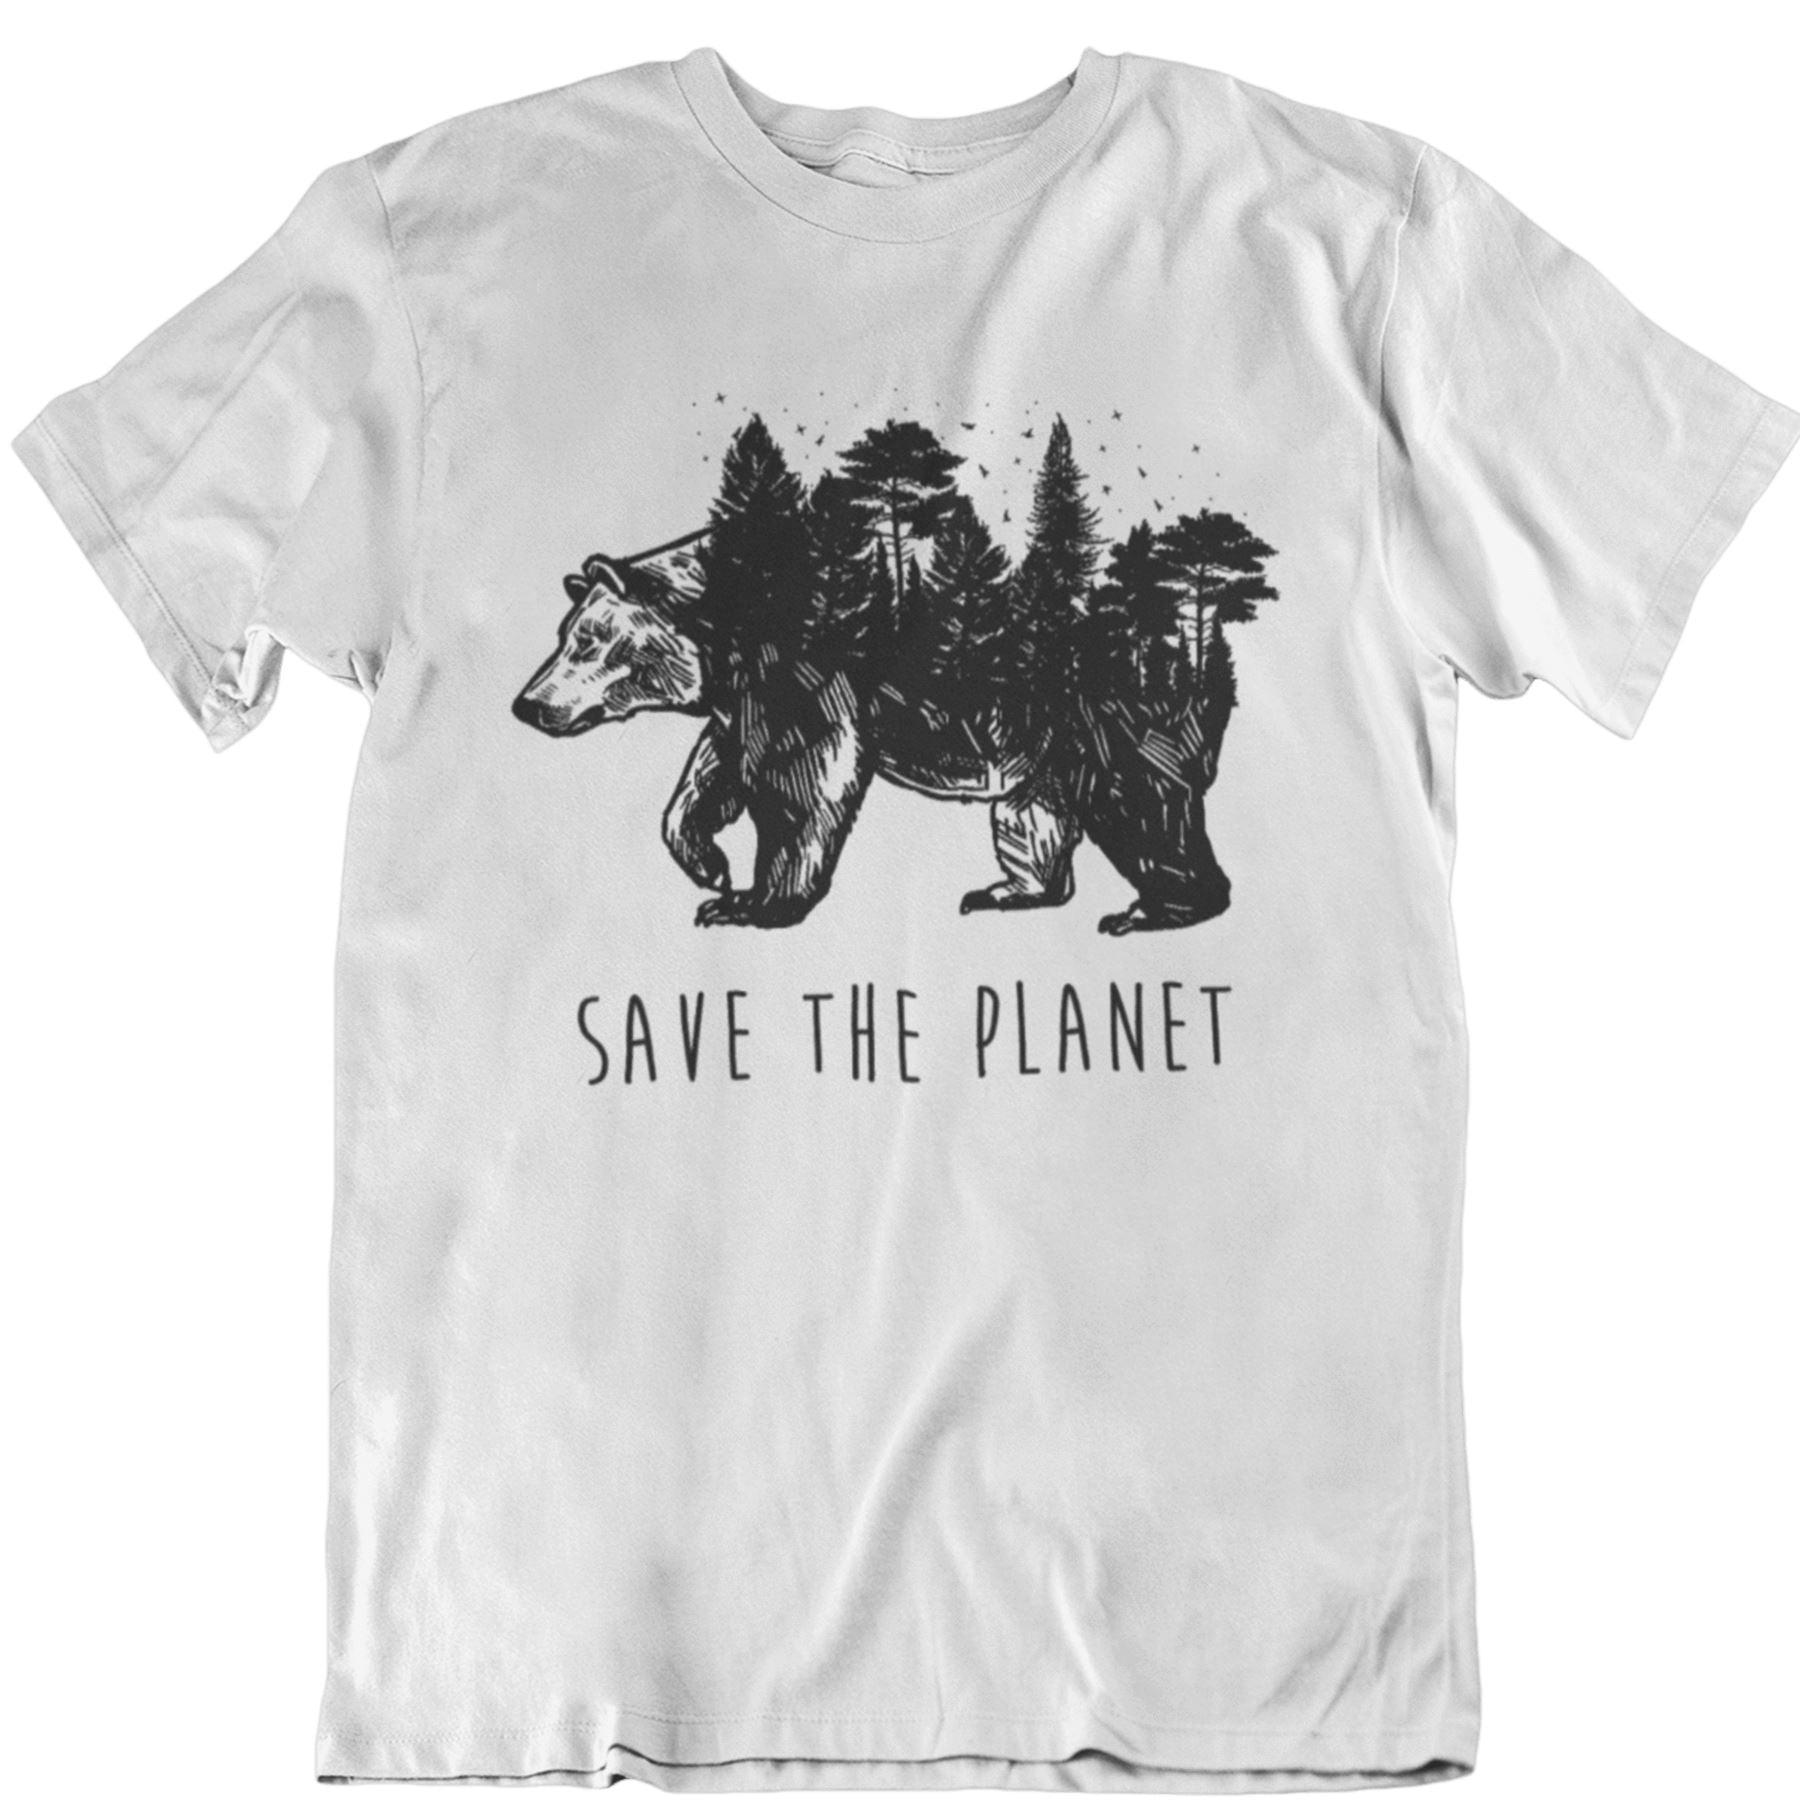 Save the planet - Unisex Organic Shirt Rocker T-Shirt ST/ST Shirtee Weiß S 